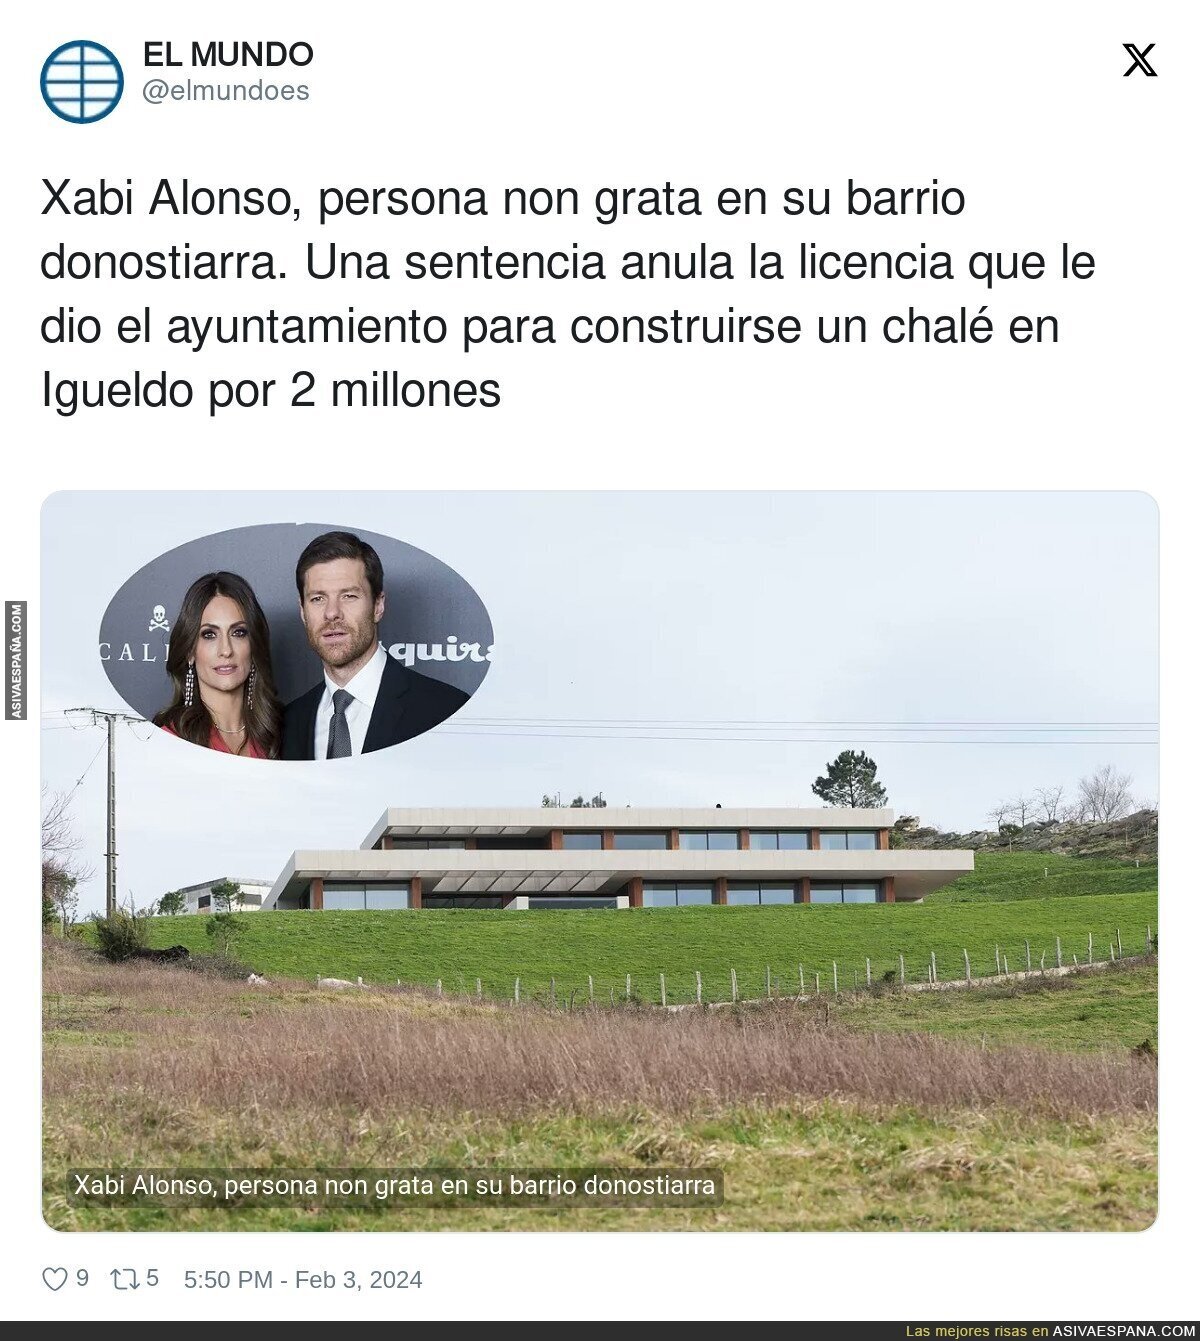 Xabi Alonso, persona non grata en su barrio donostiarra